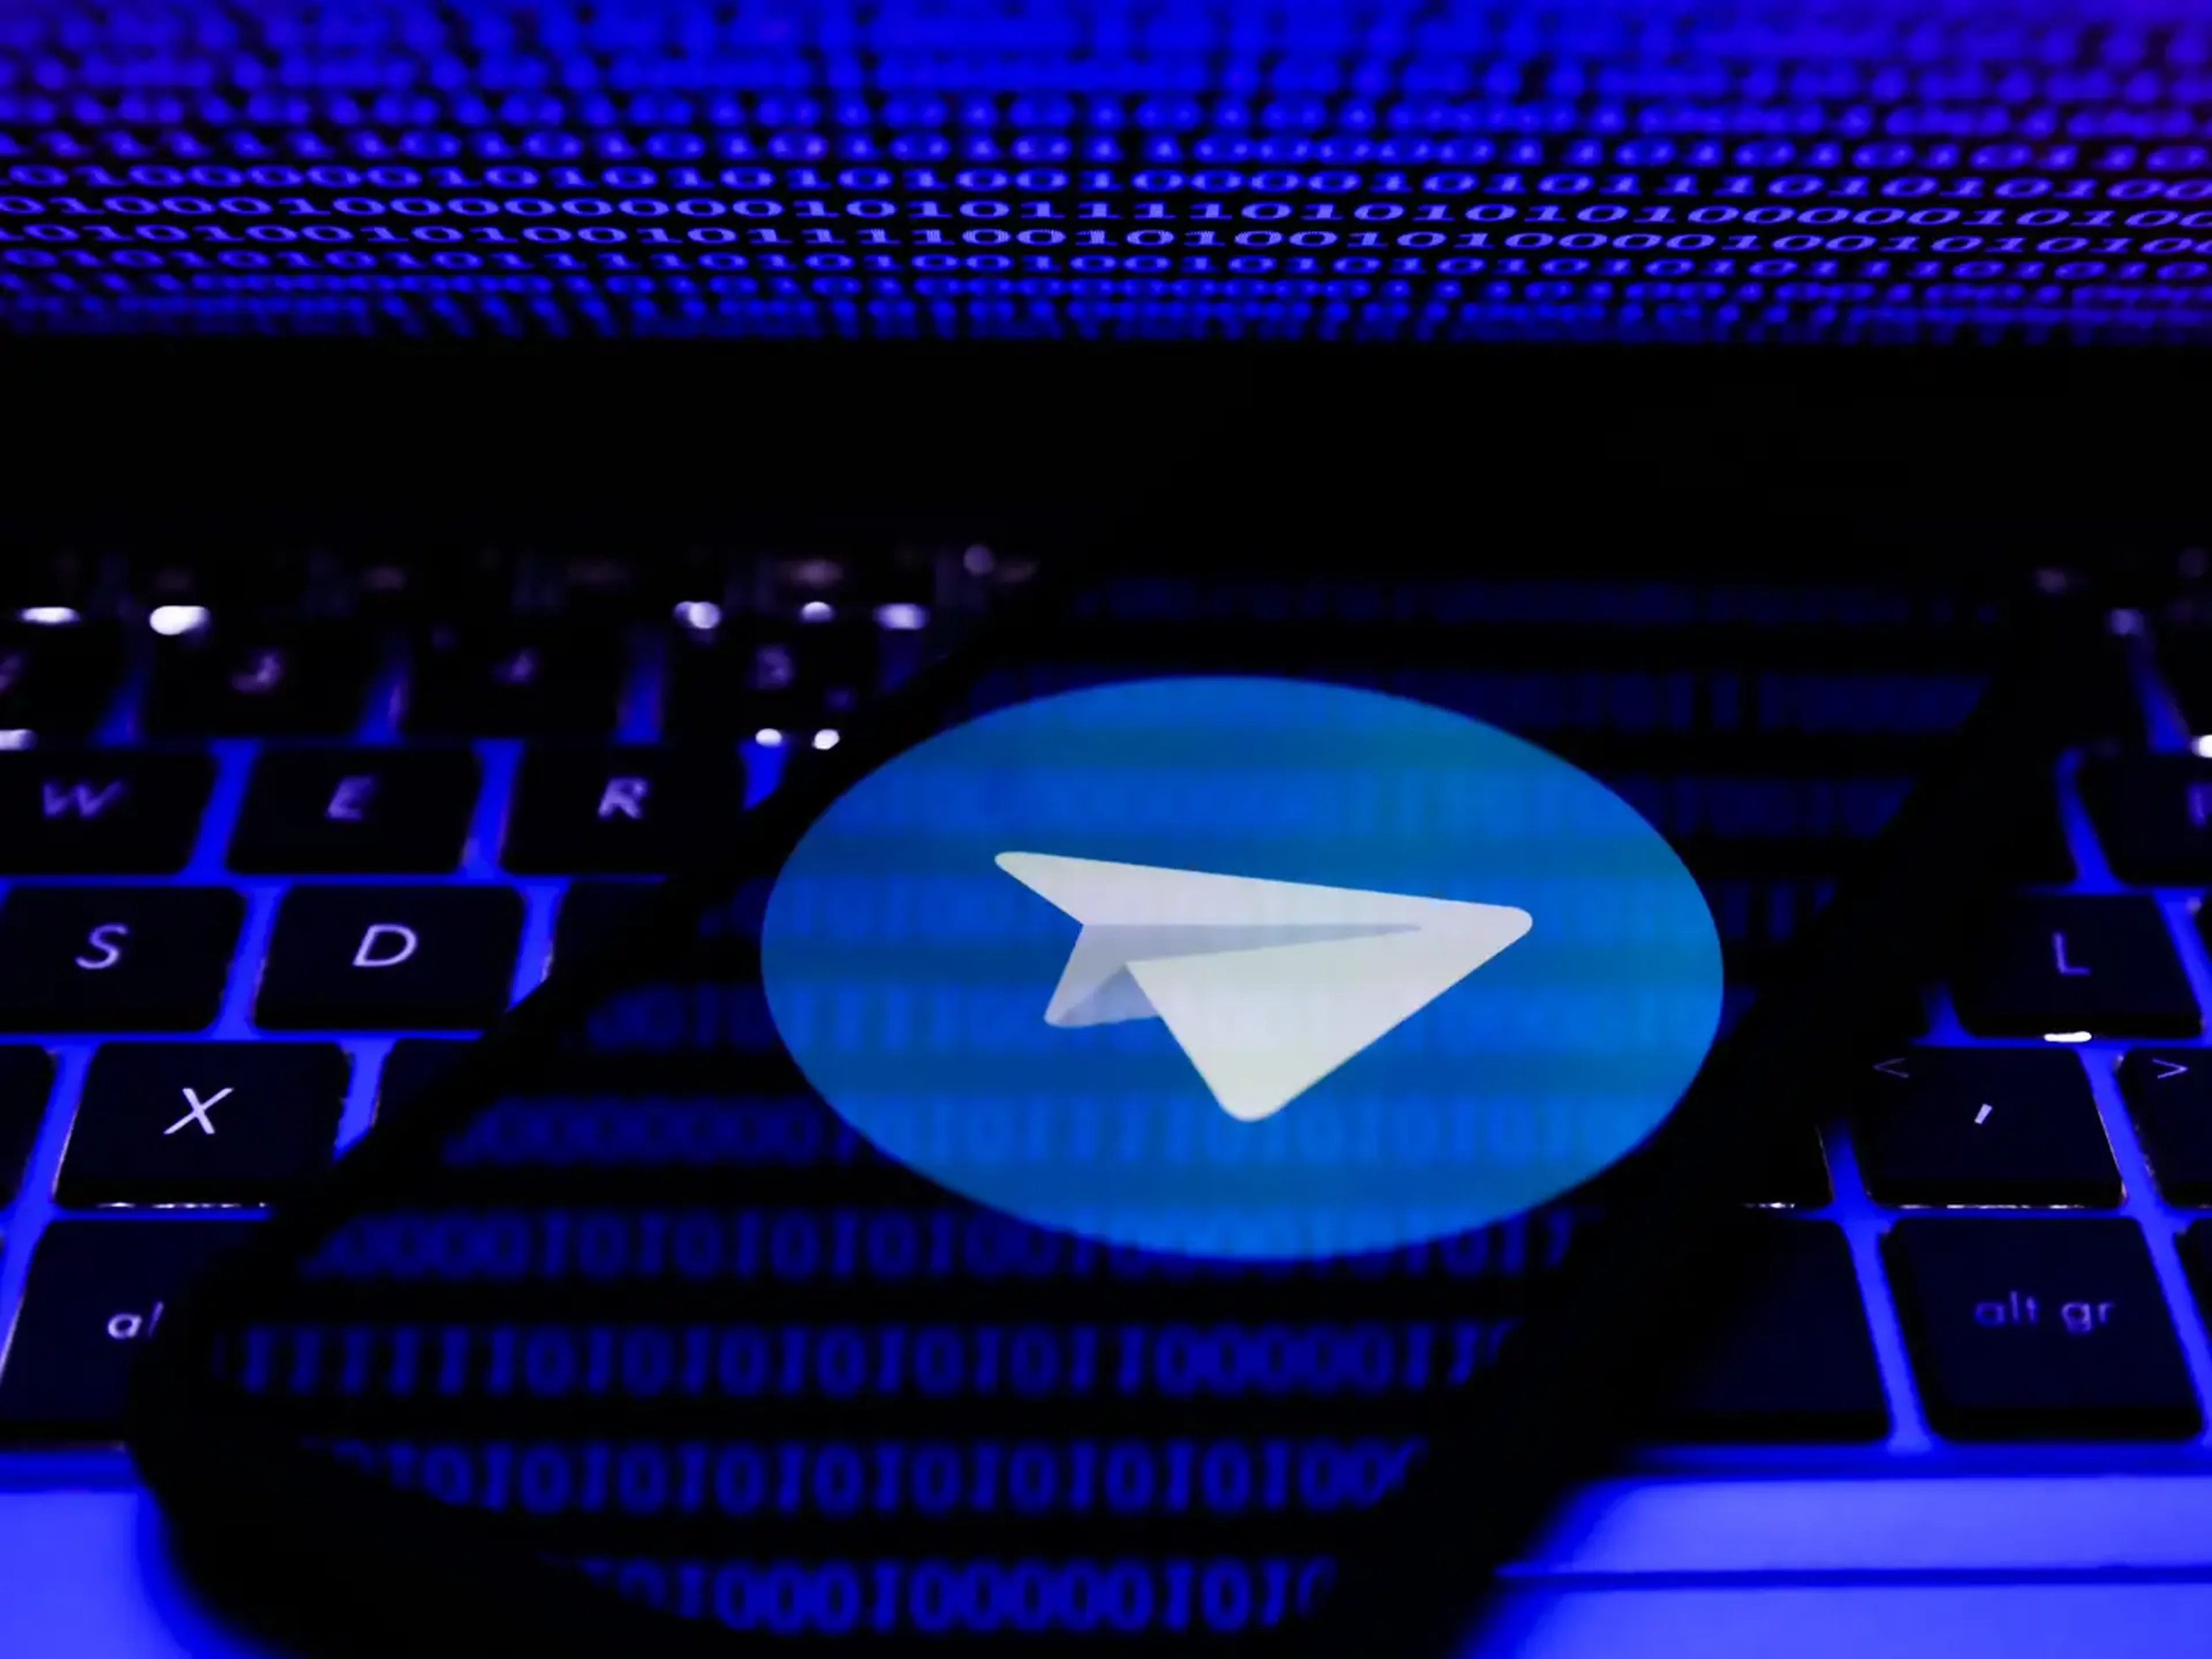 Logo de Telegram